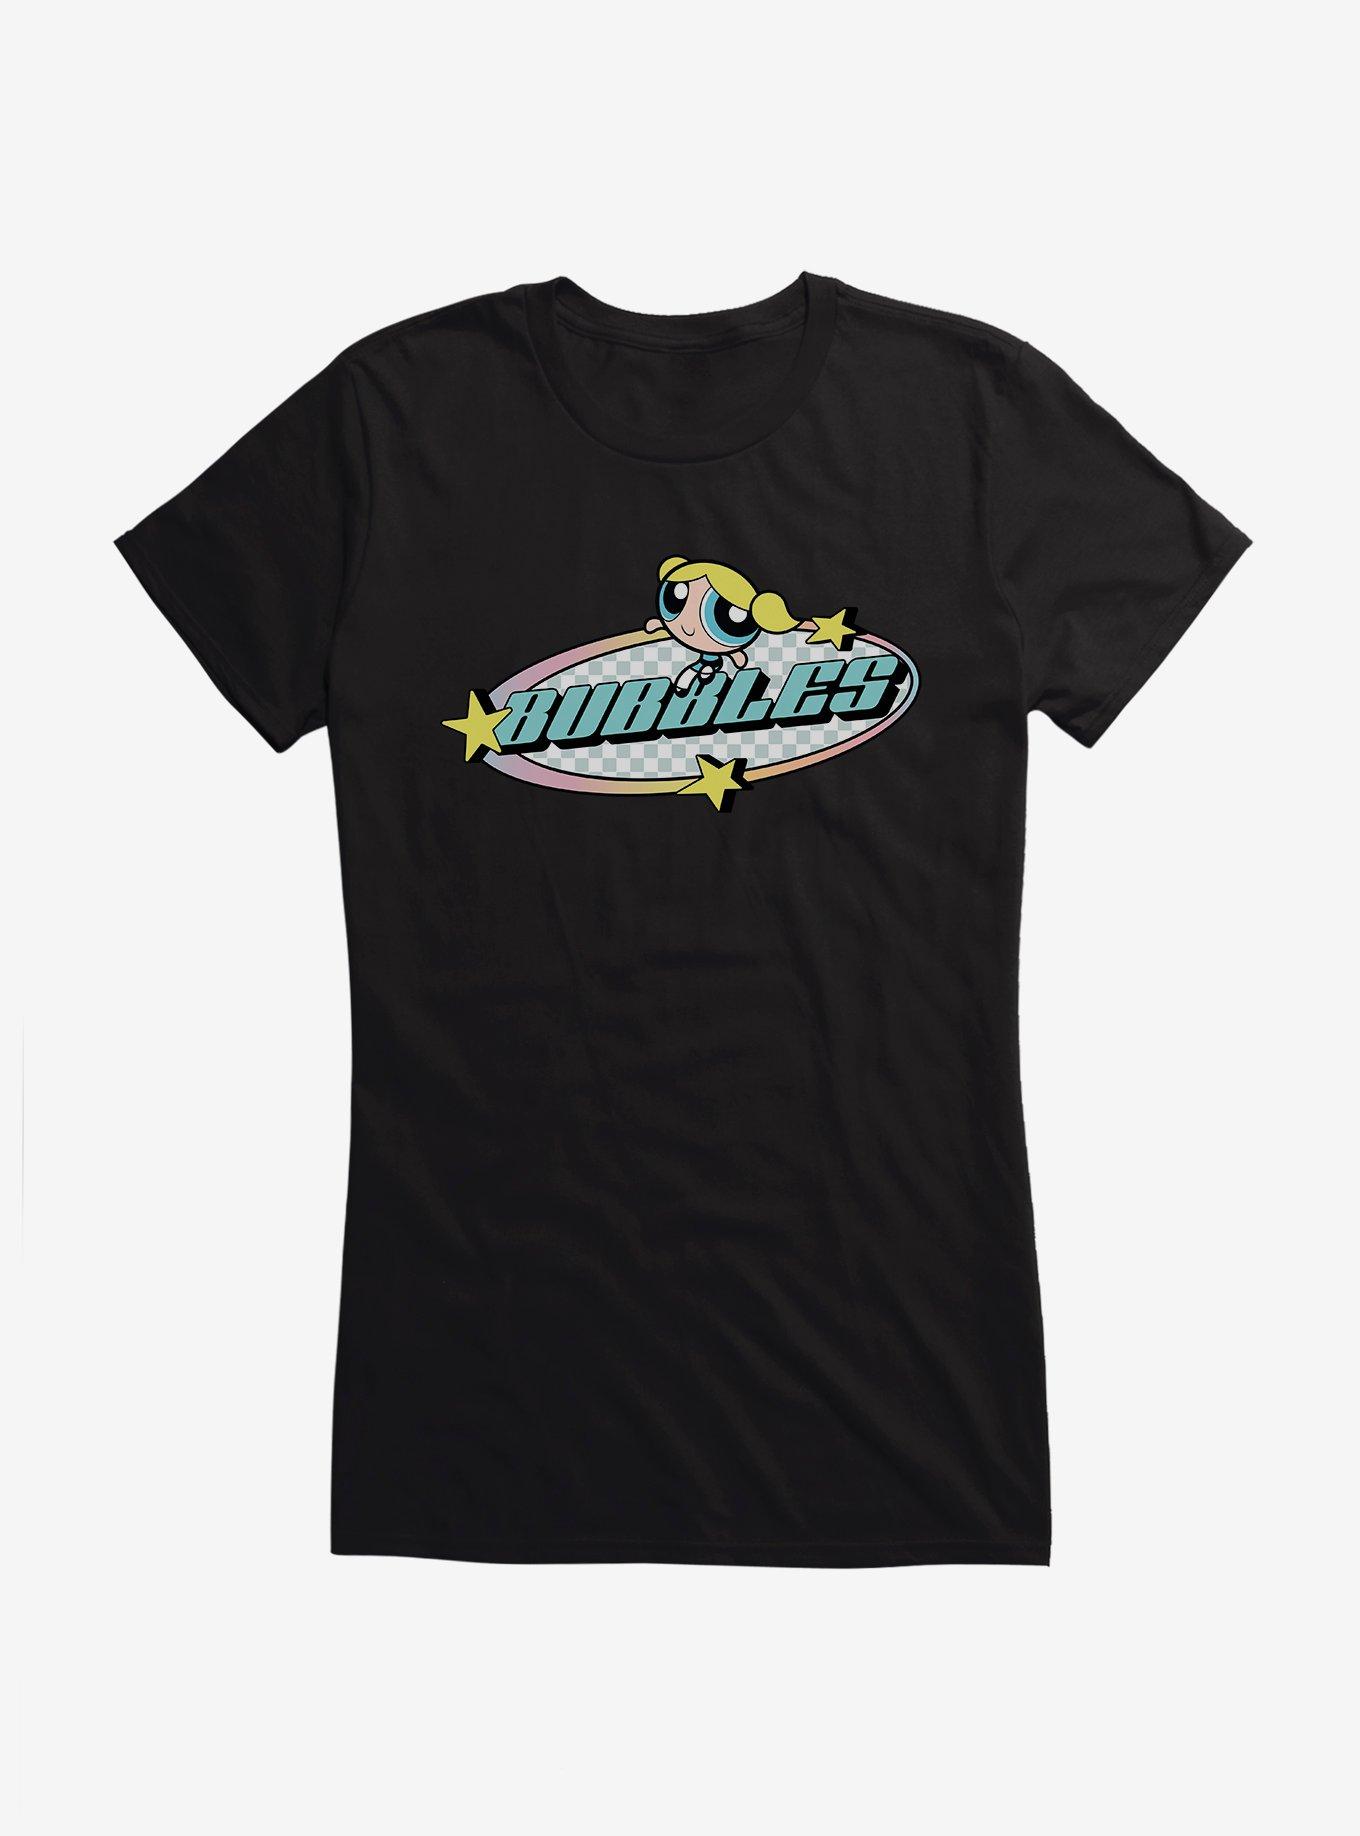 Powerpuff Girls Bubbles T-Shirt